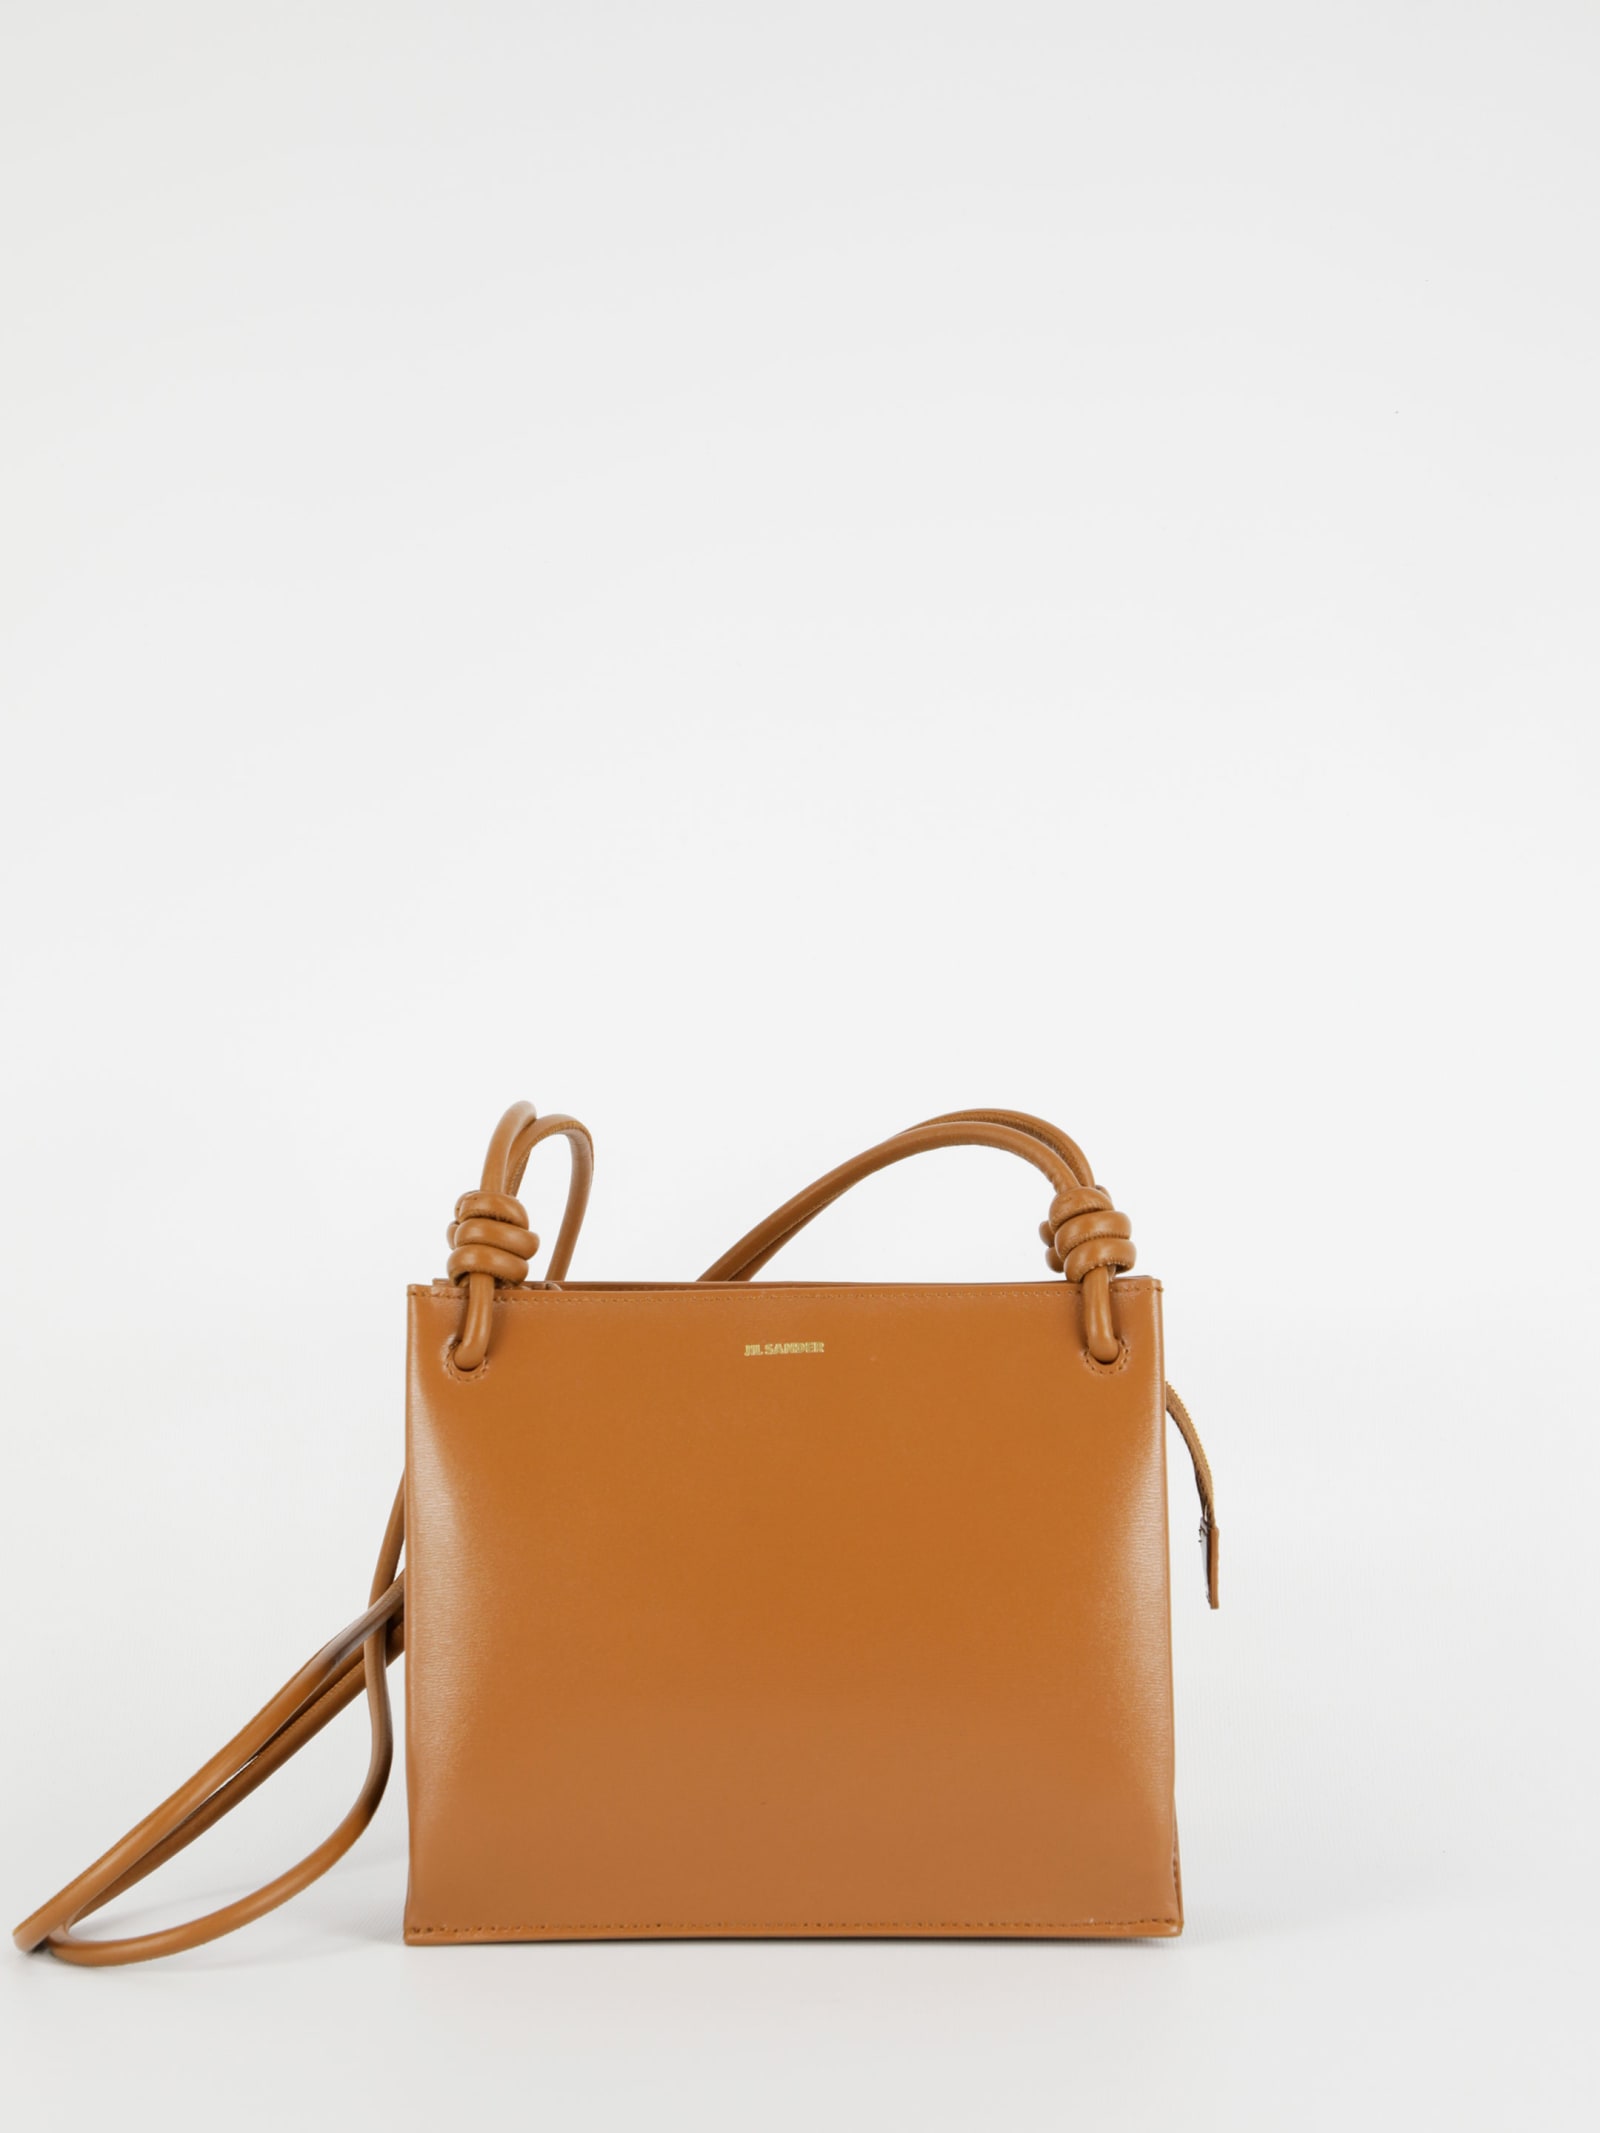 Jil Sander Light Brown Leather Bag